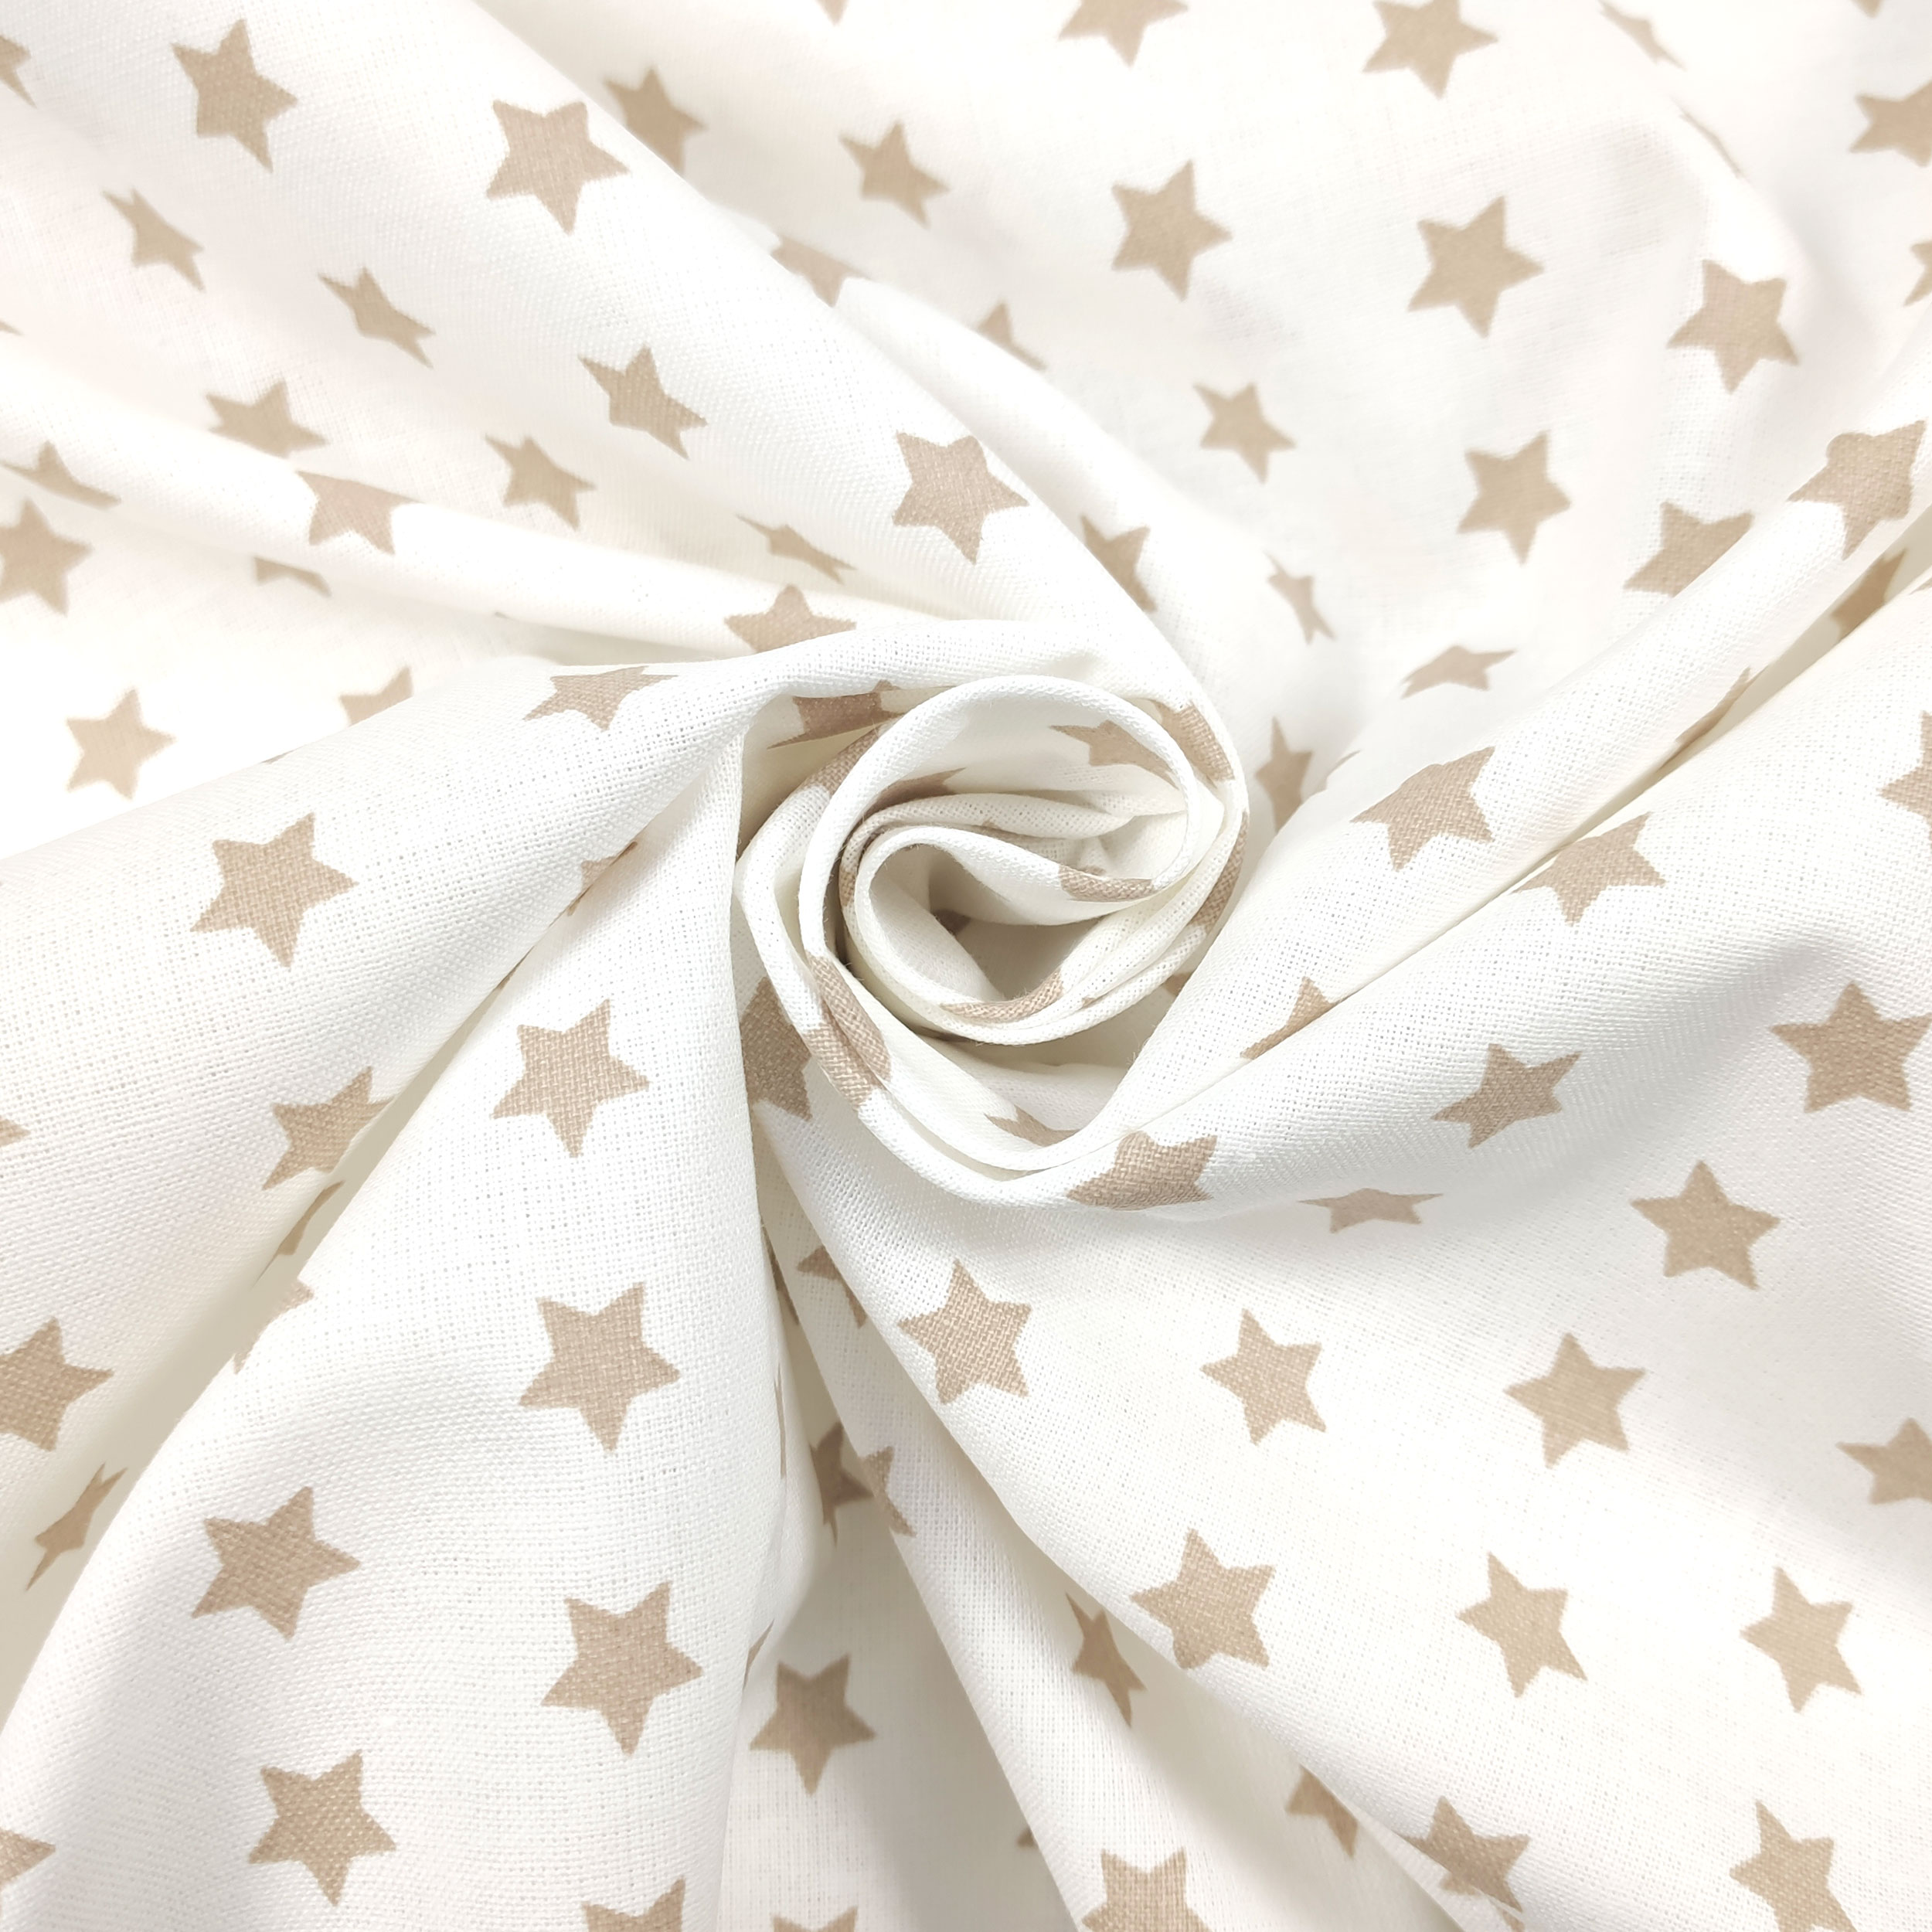 tessuto stelle beige sfondo bianco cotone